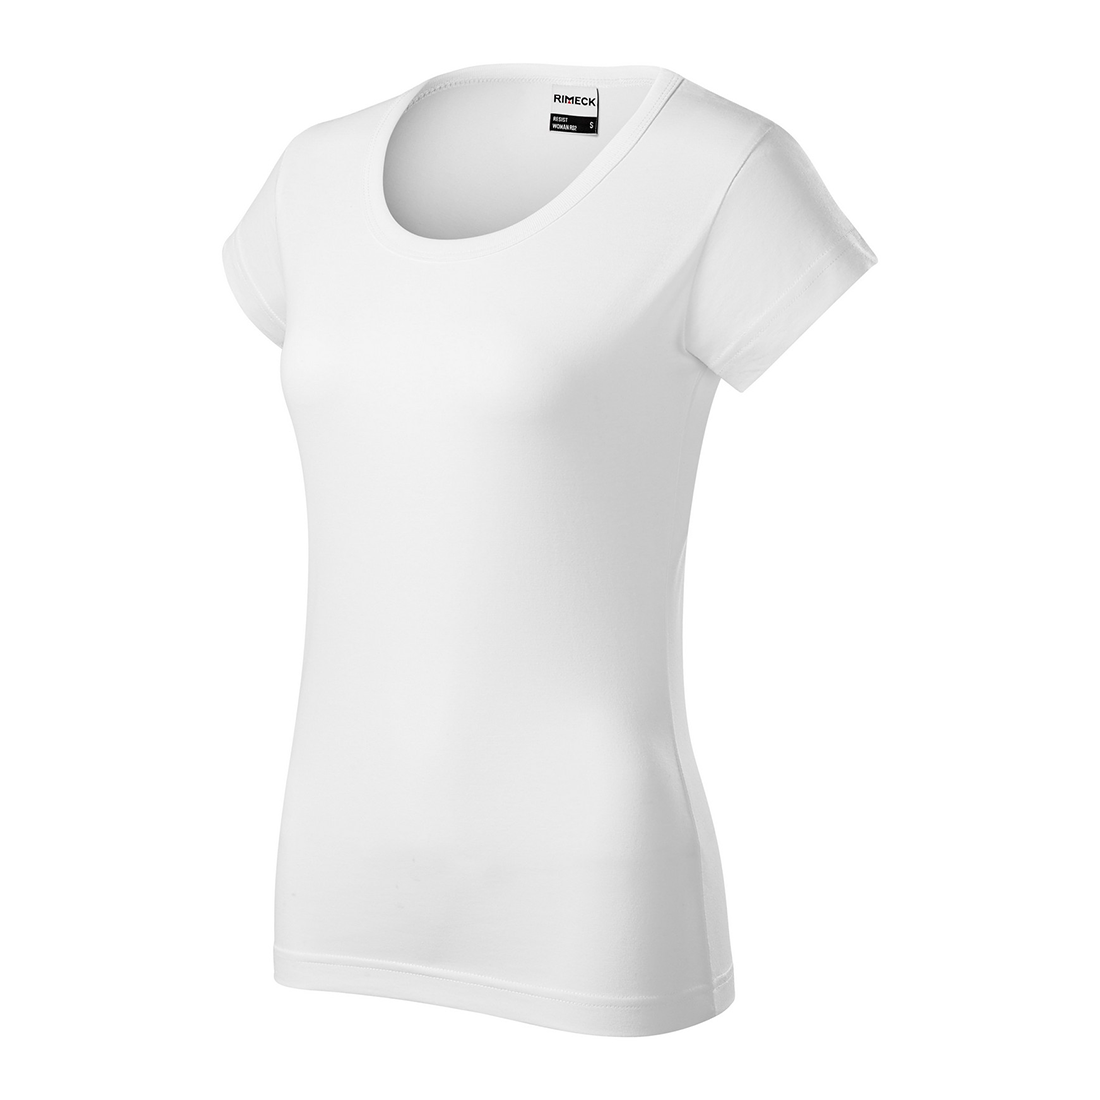 Pre-shrunk Women's T-shirt - Safetywear